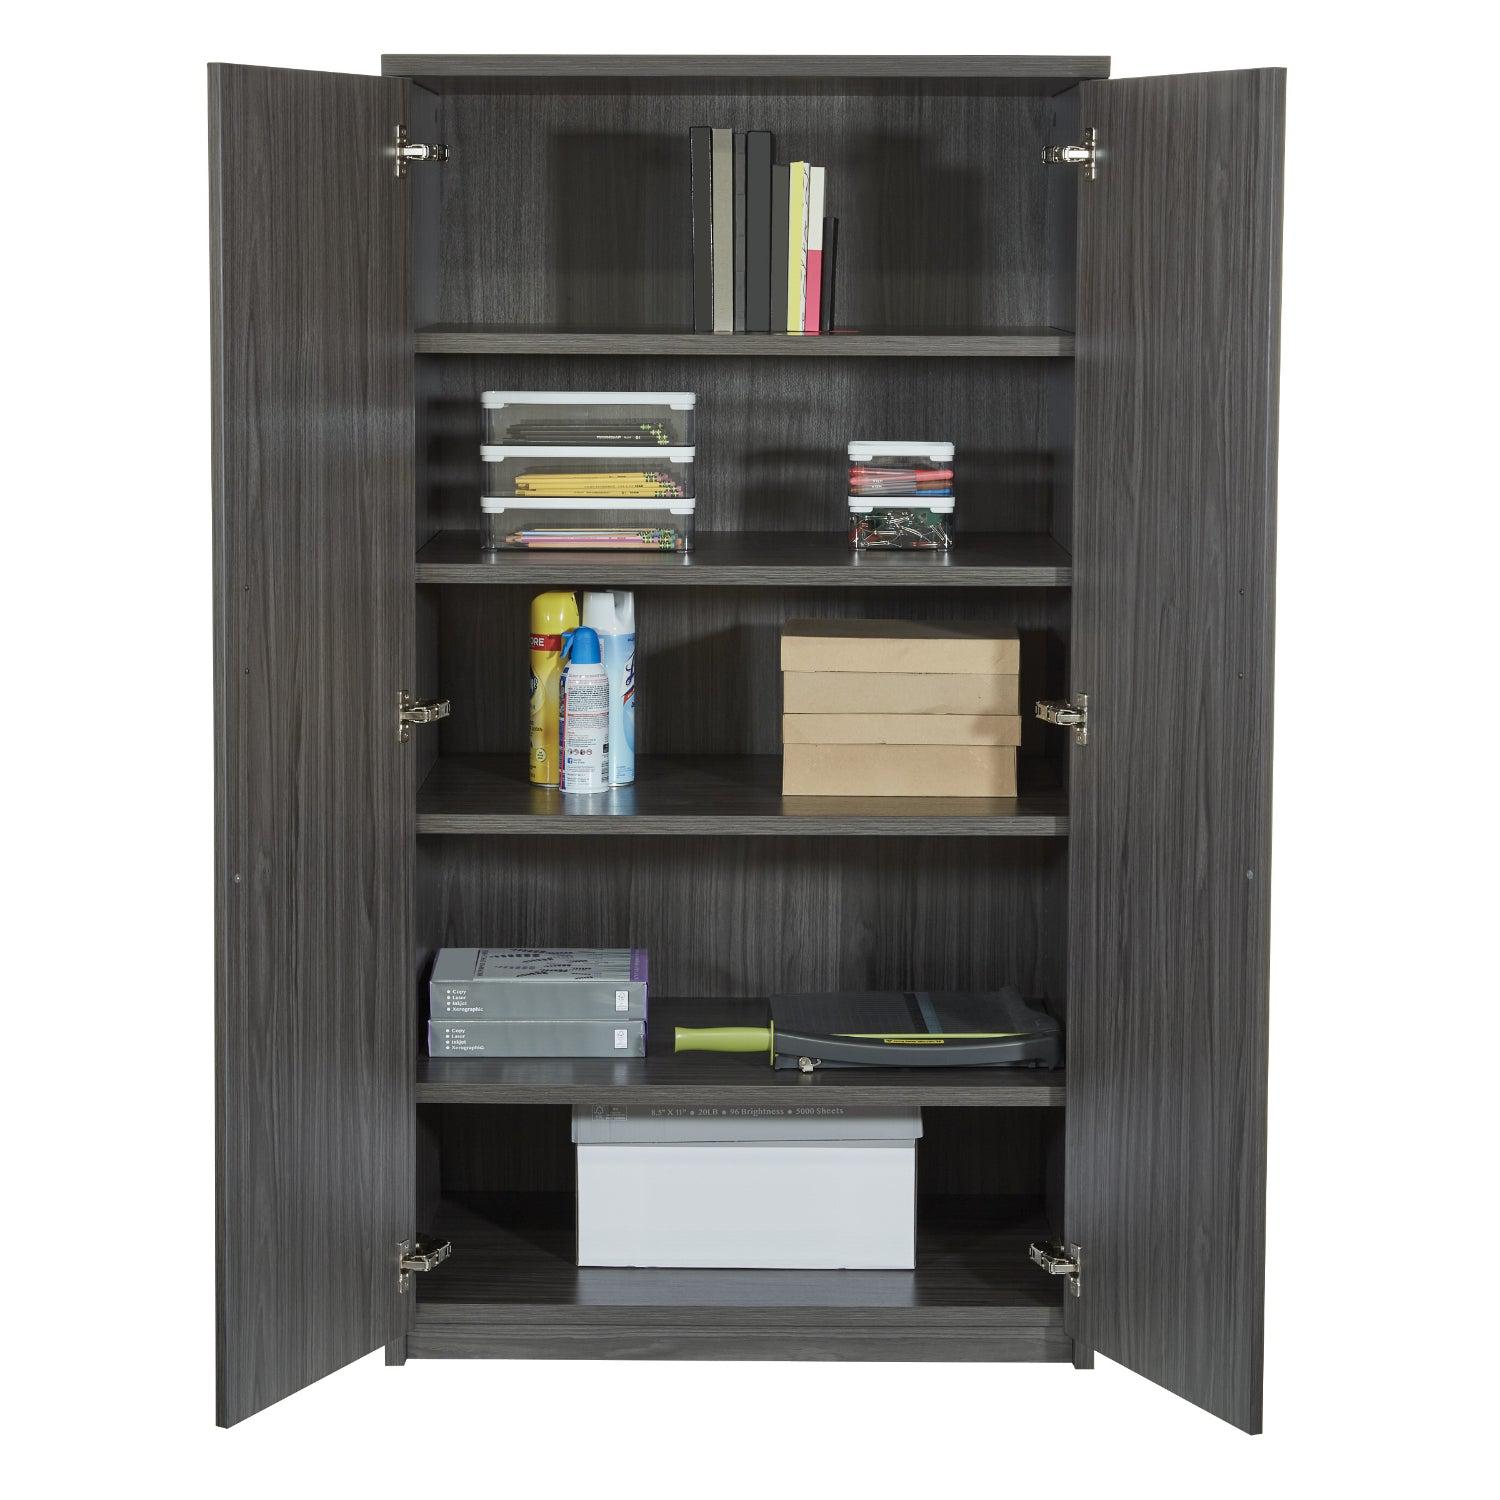 Napa 5-Shelf Storage Cabinet, 36" W x 22.5" D x 65" H